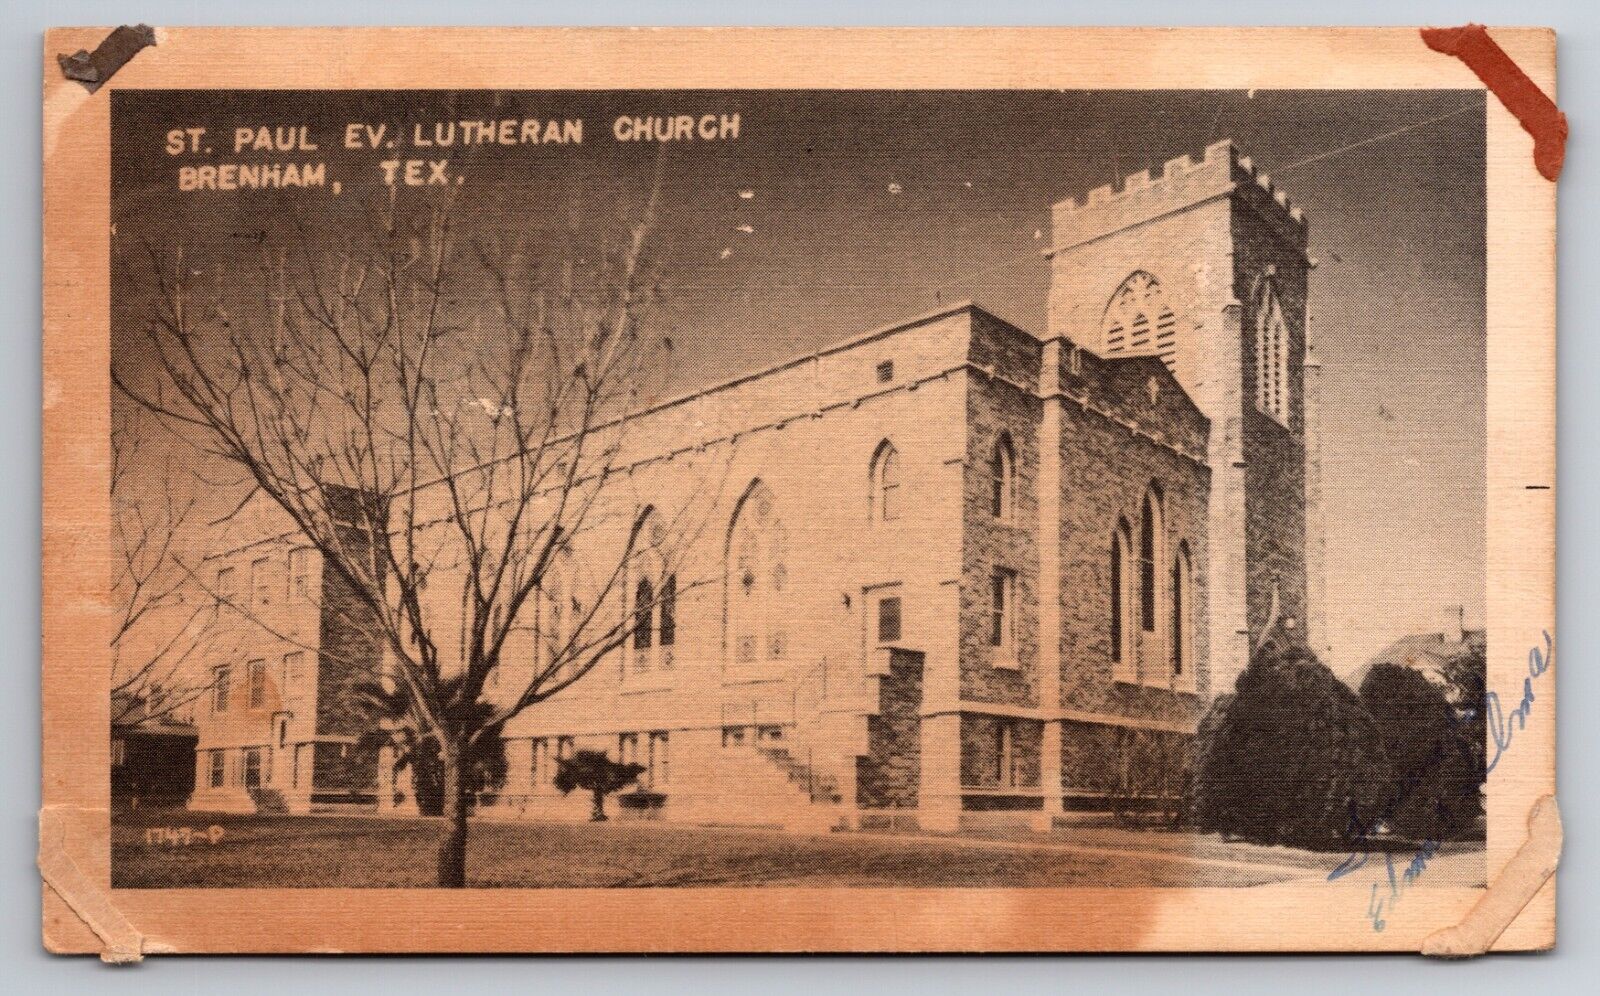 St. Paul Evangelical Lutheran Church Brenham Texas TX 1942 Postcard